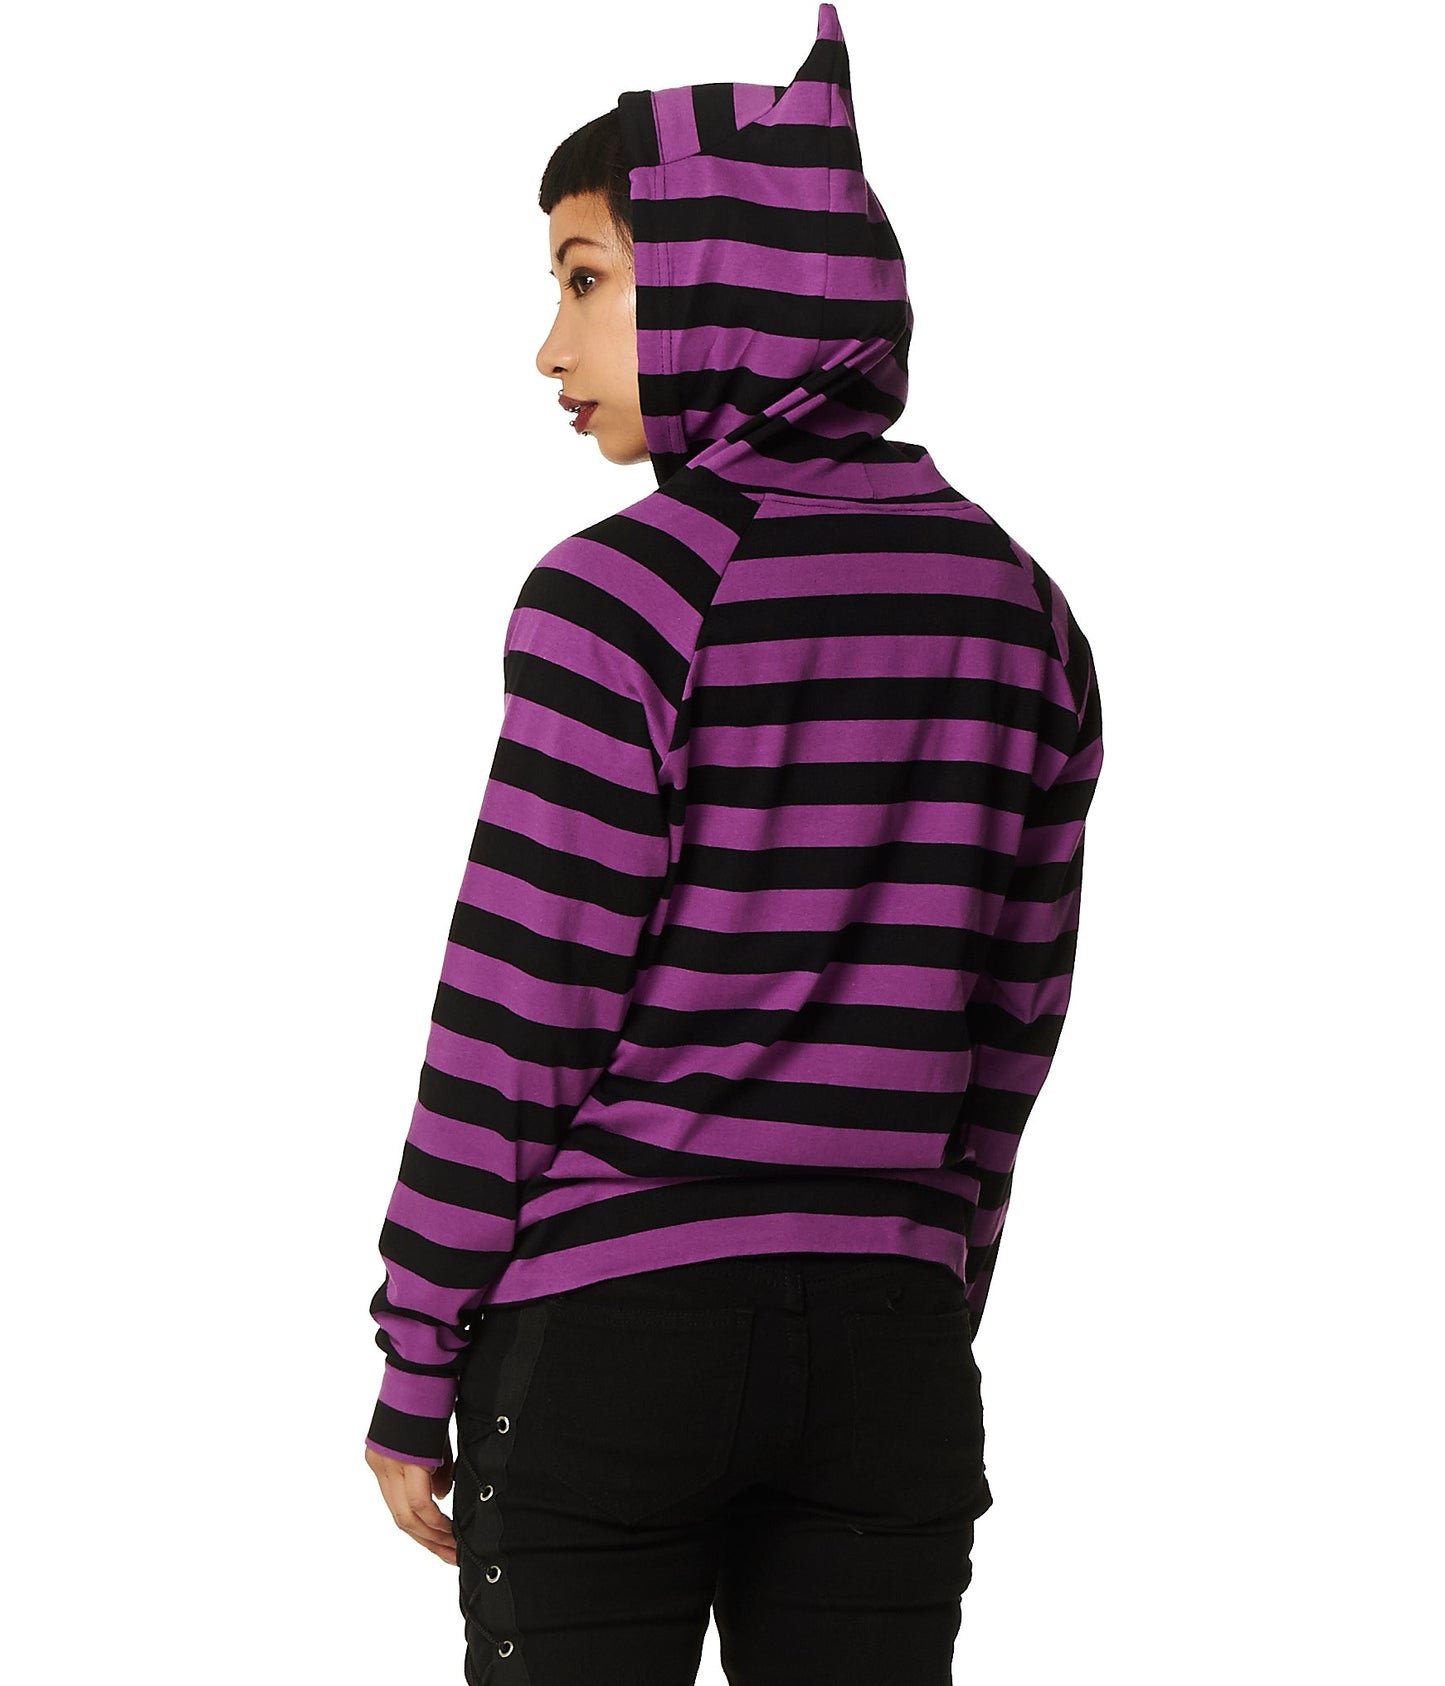 Alternative model in striped purple hoodie with cat ear hood.